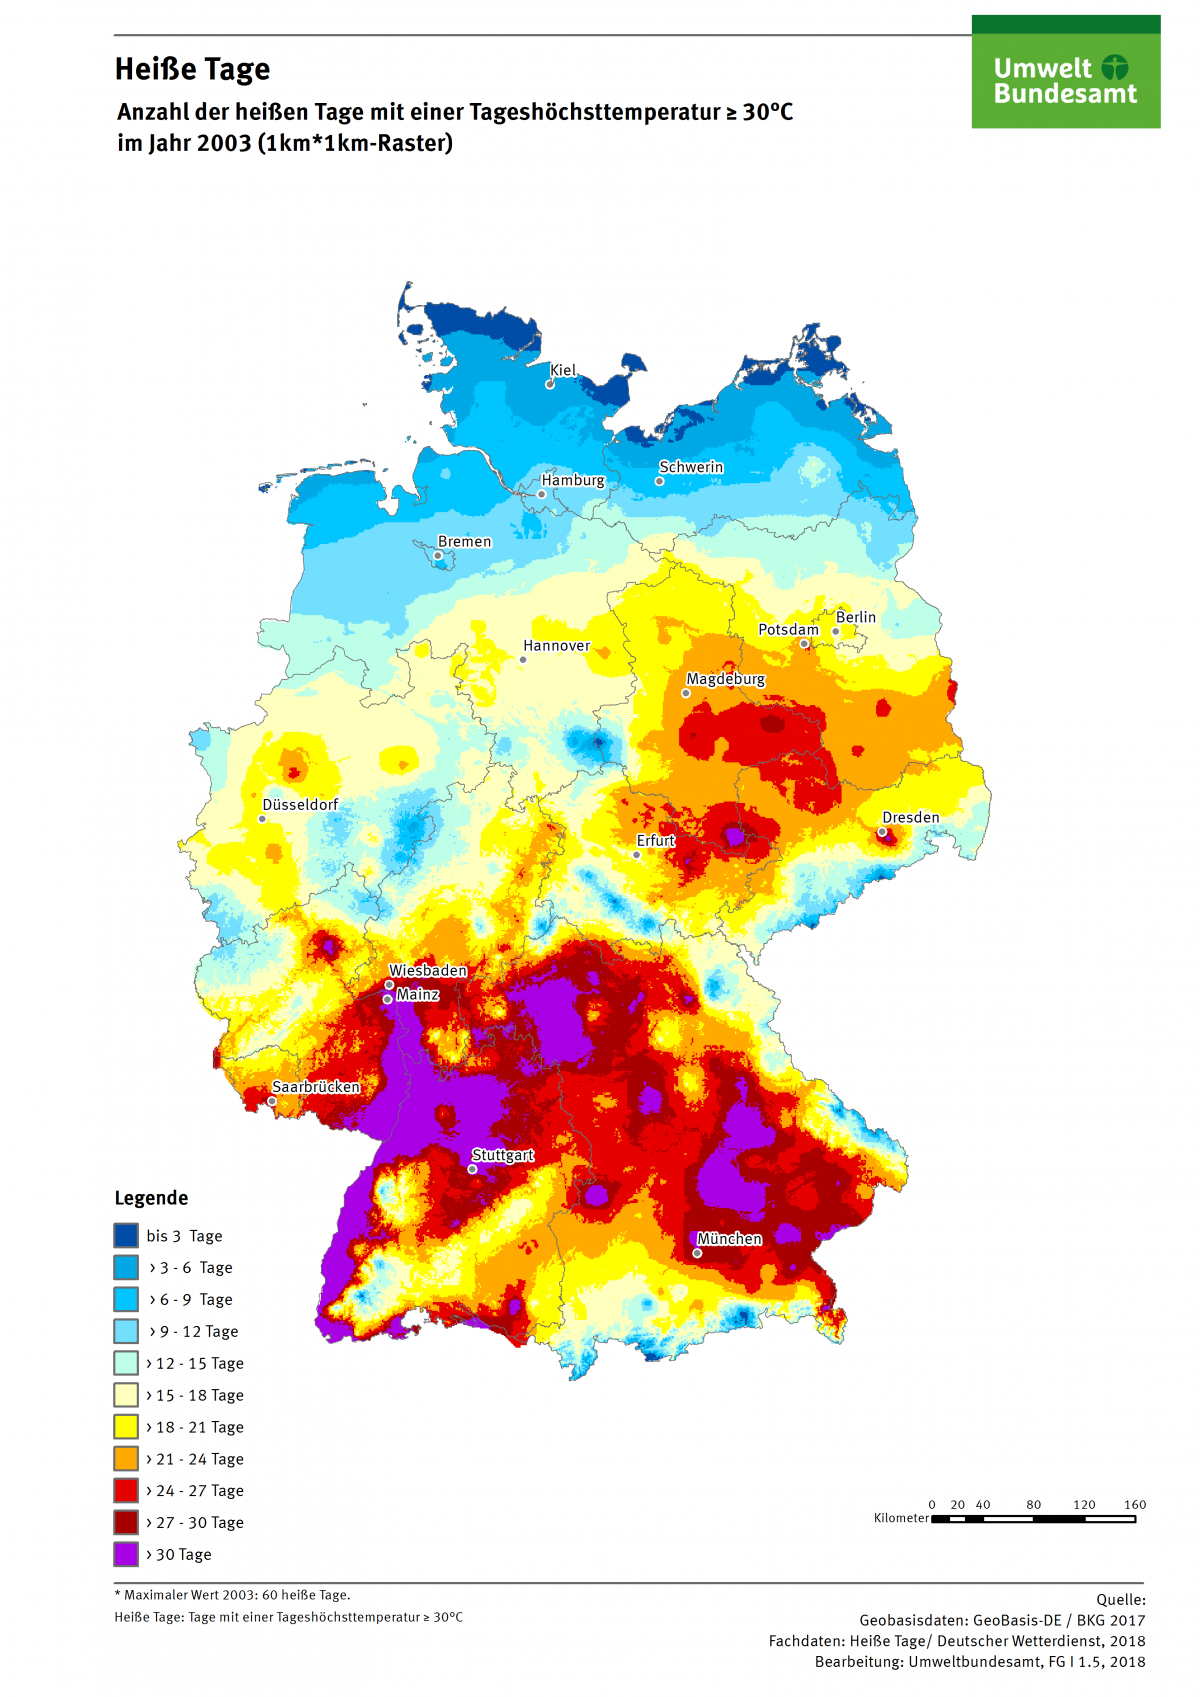 Die Karte zeigt die Anzahl Heißer Tage in Deutschland im Jahr 2003. Maximal gab es in diesem Jahr 60 Heiße Tage in Deutschland.